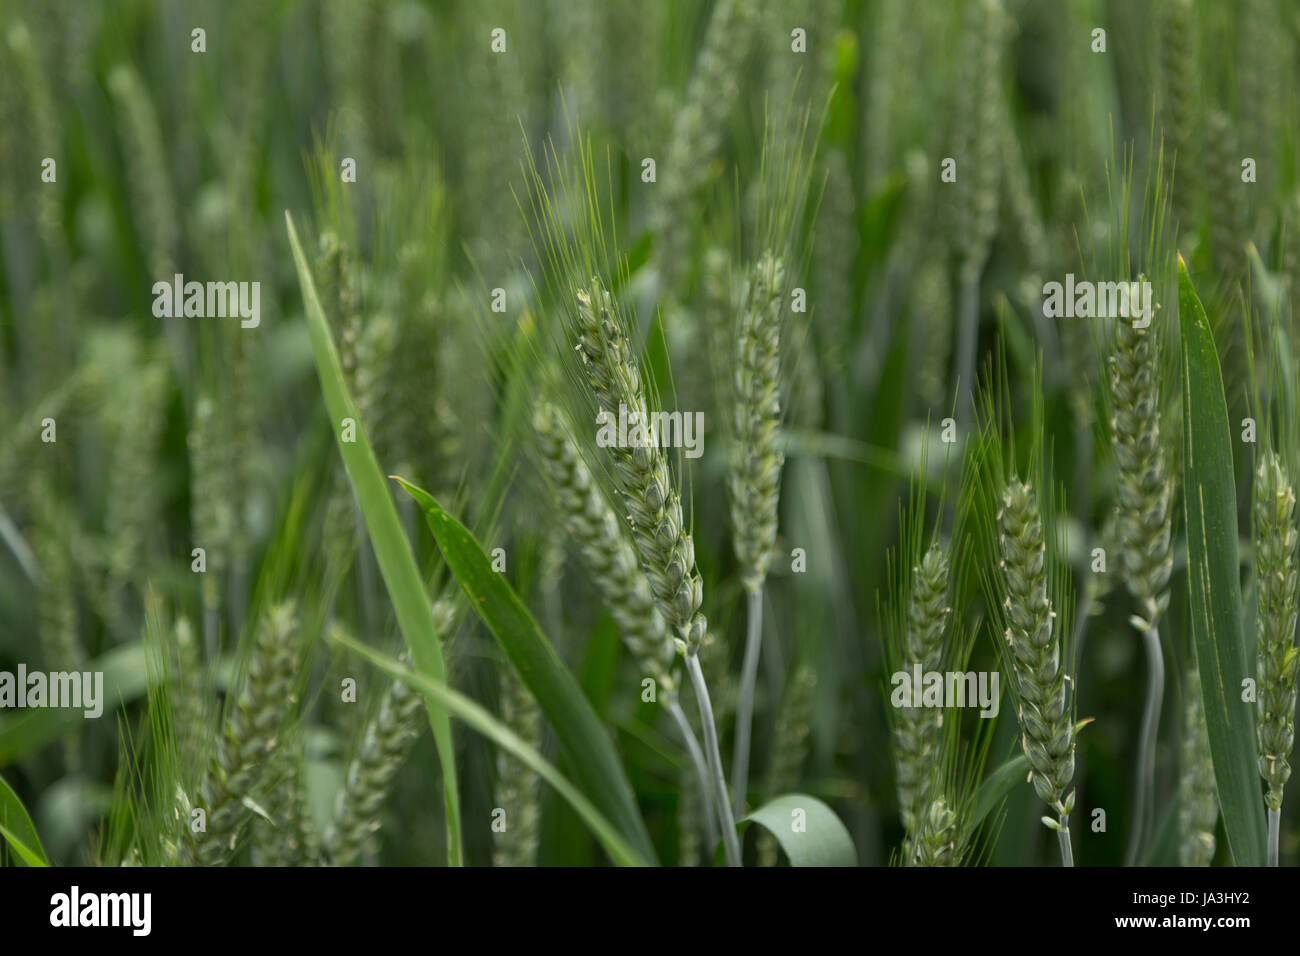 Une photographie d'un champ de céréales en Europe. Banque D'Images